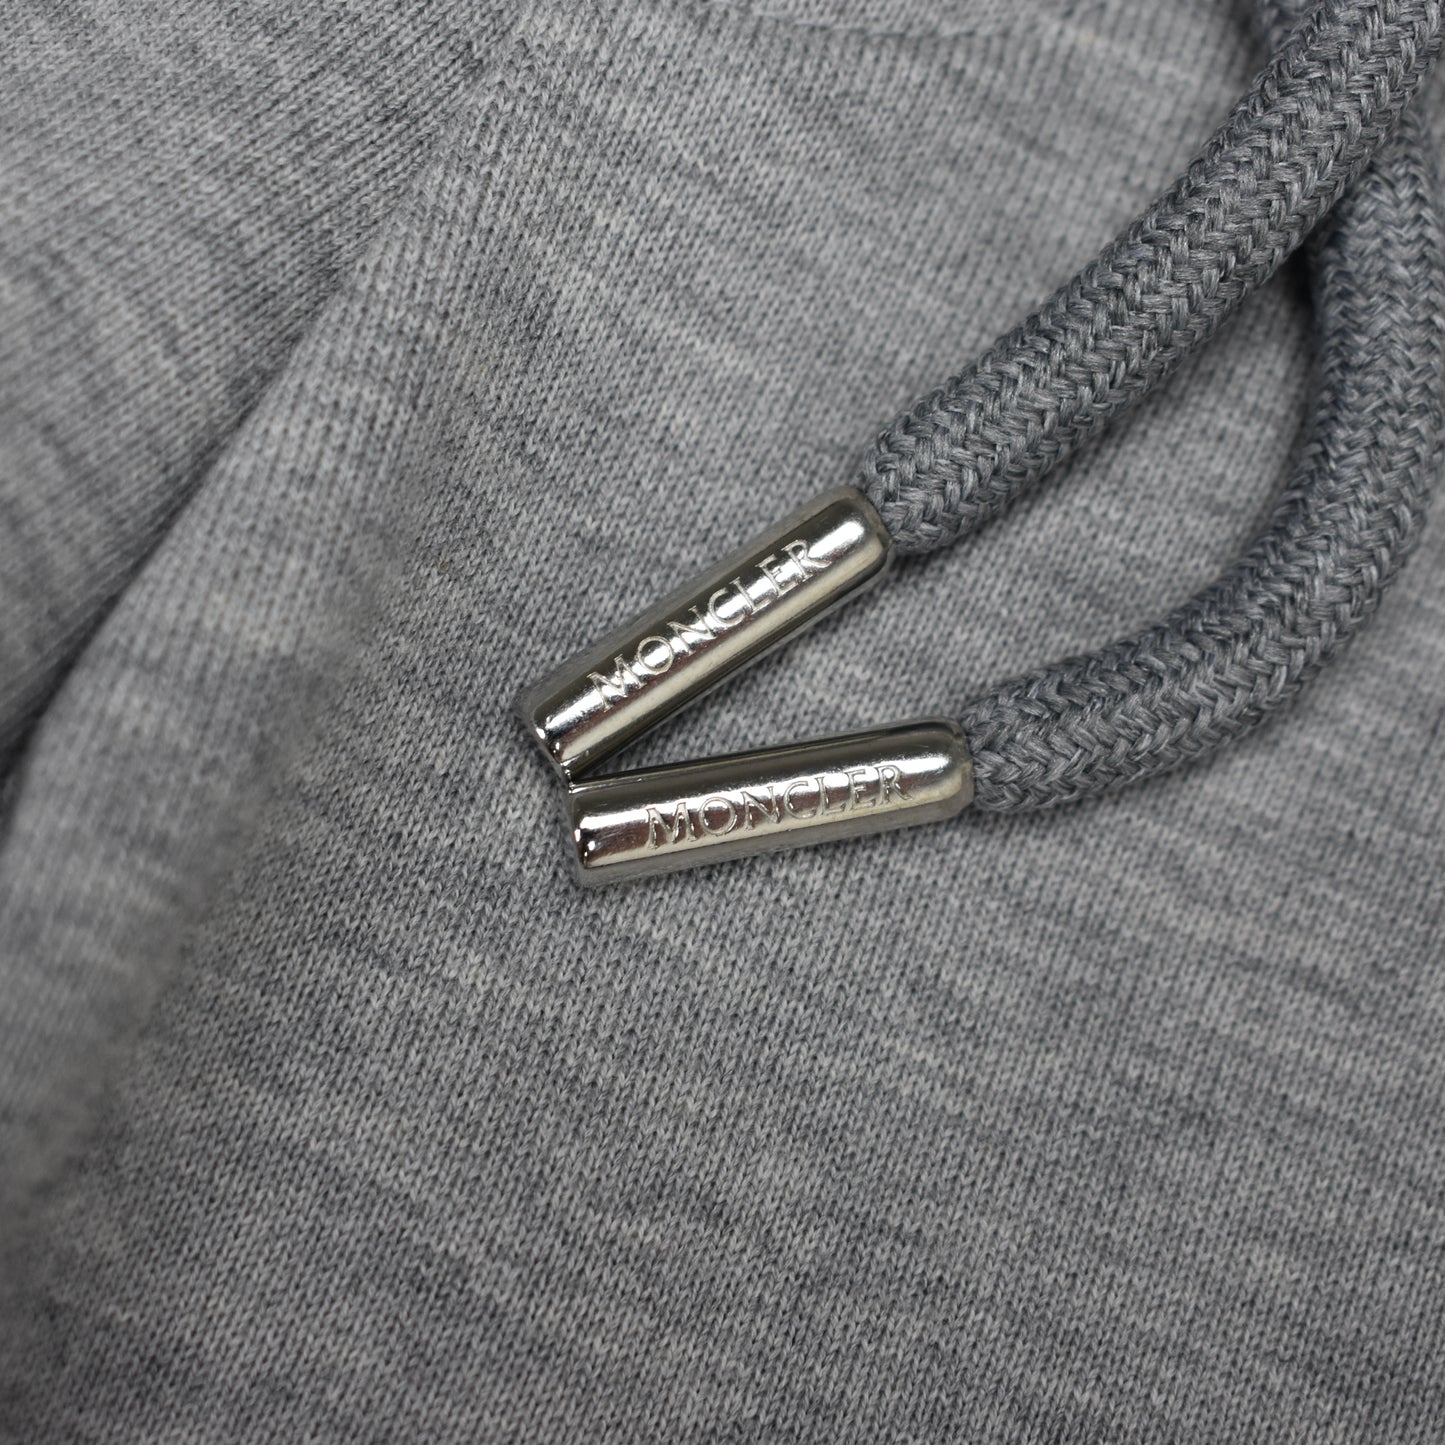 Moncler - Gray Logo Patch Sweatpants